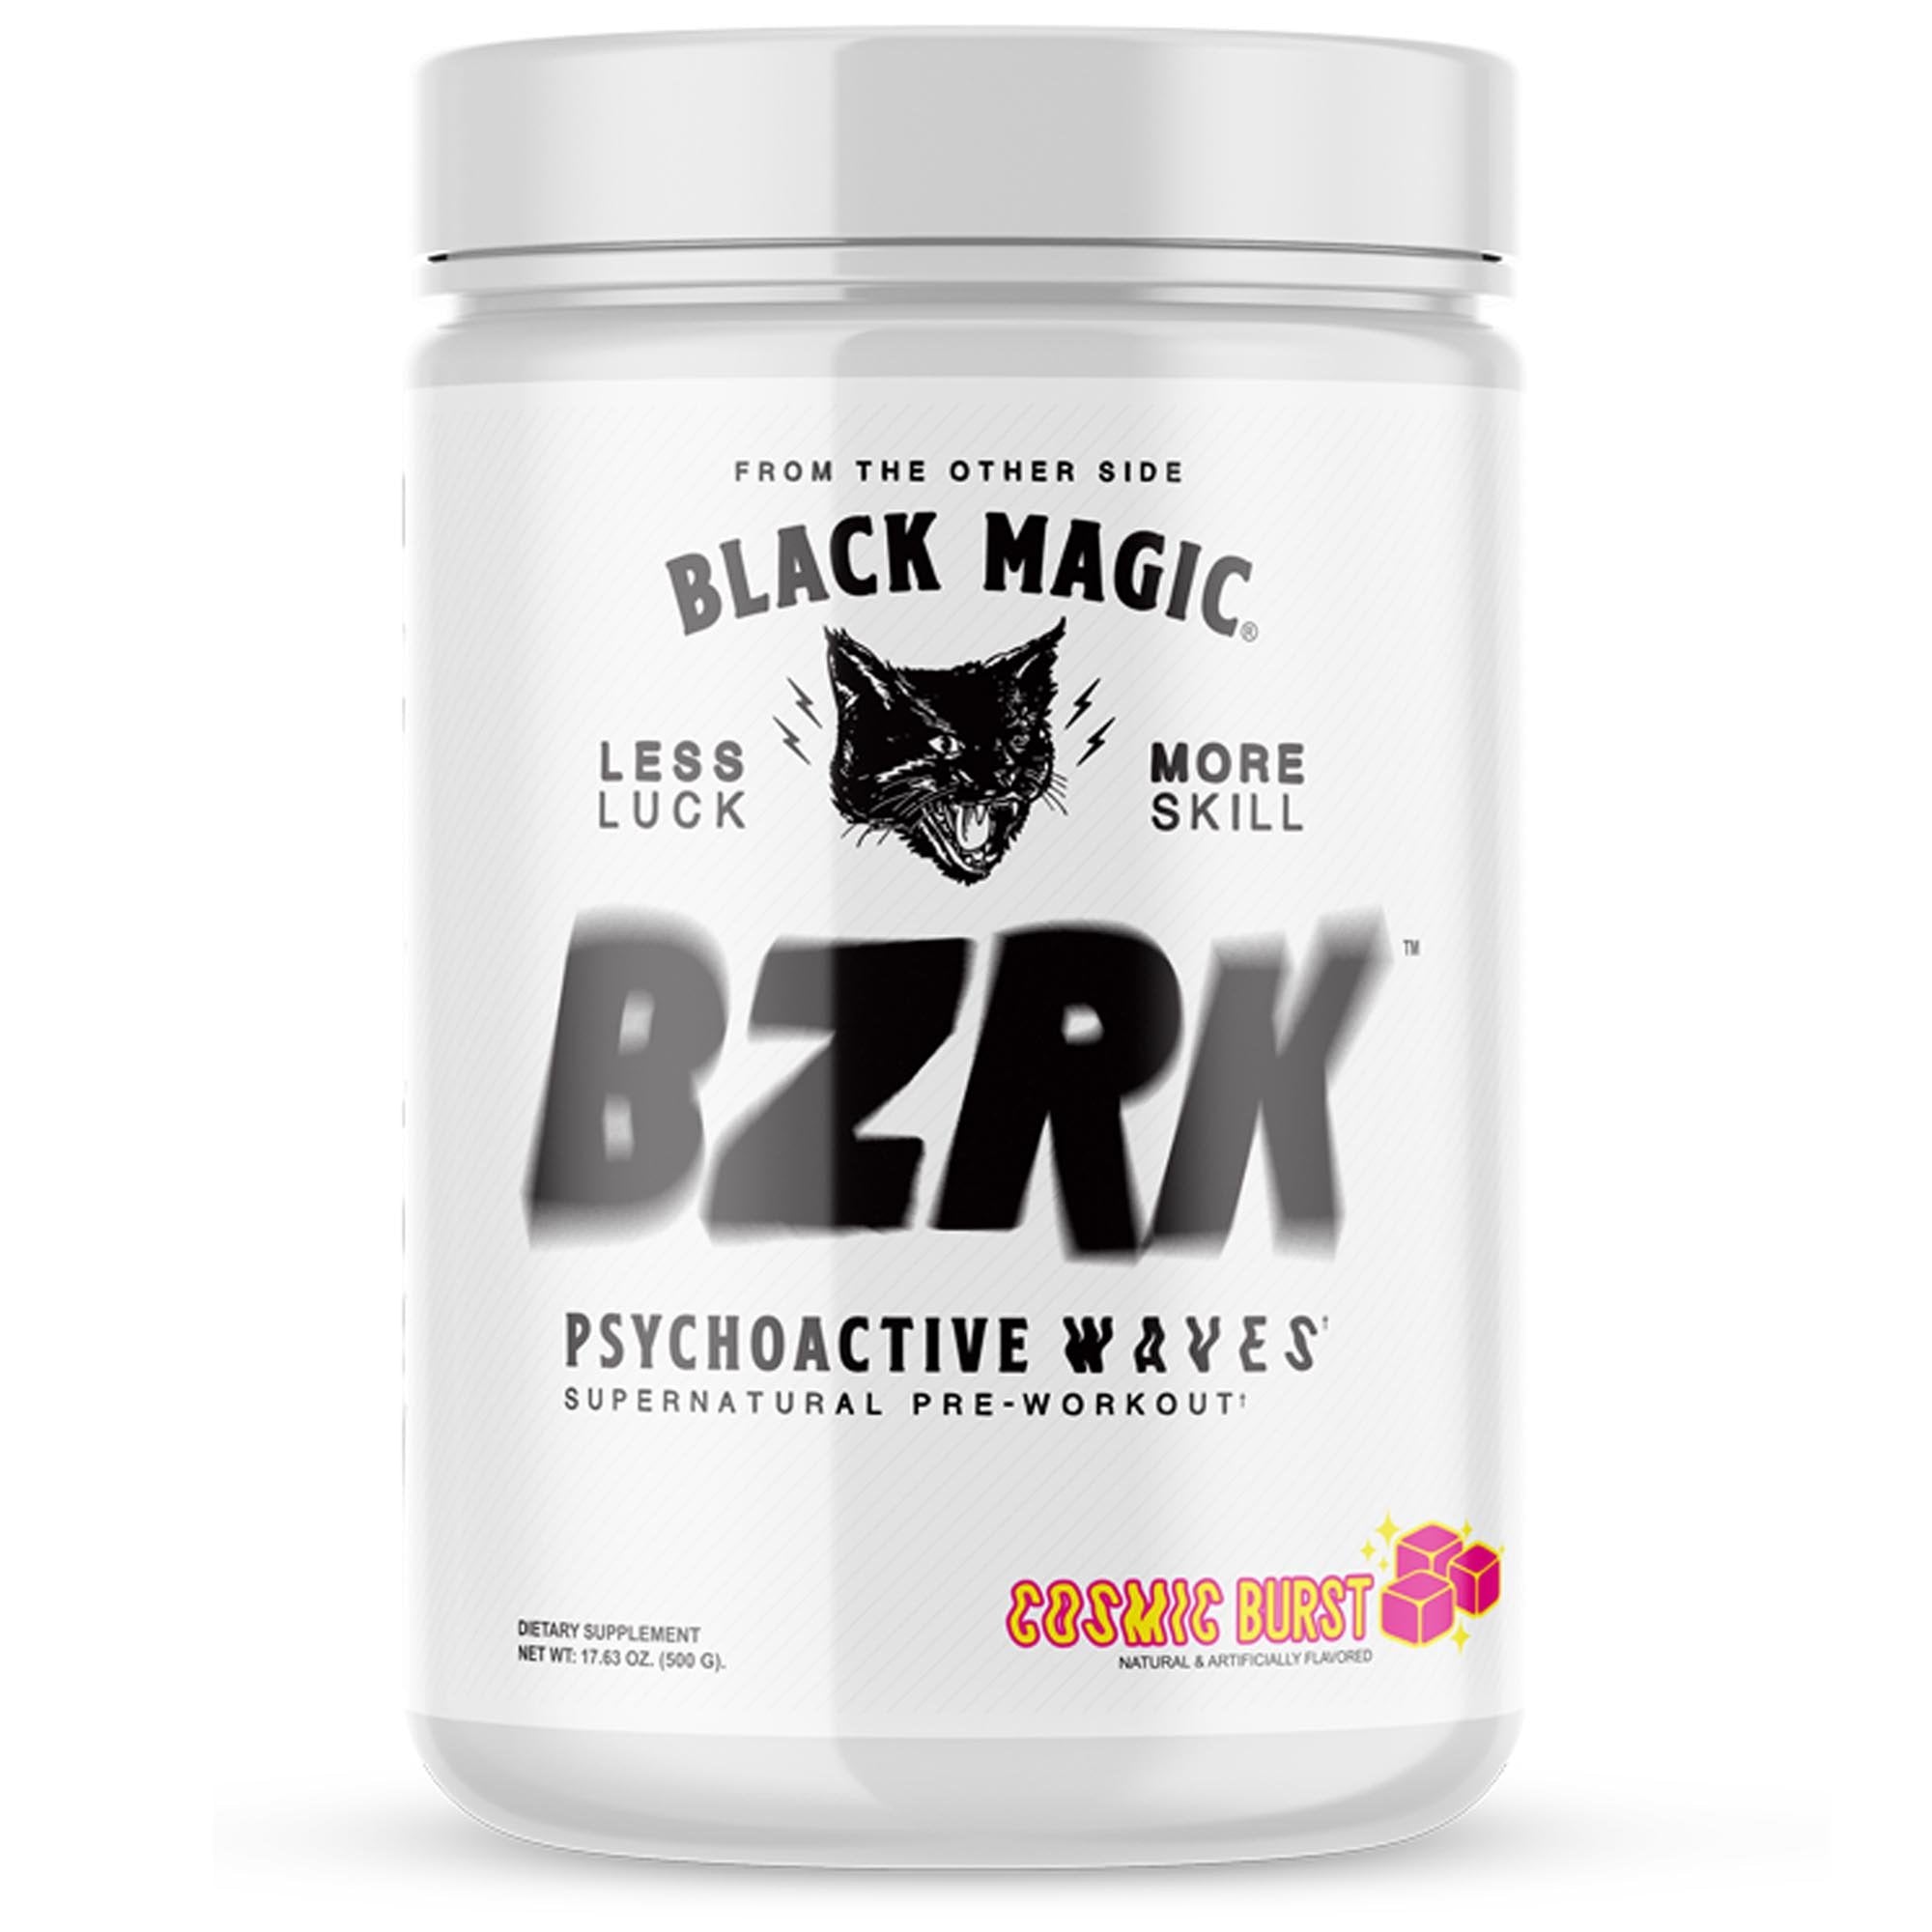 Black Magic - BZRK Pre-workout